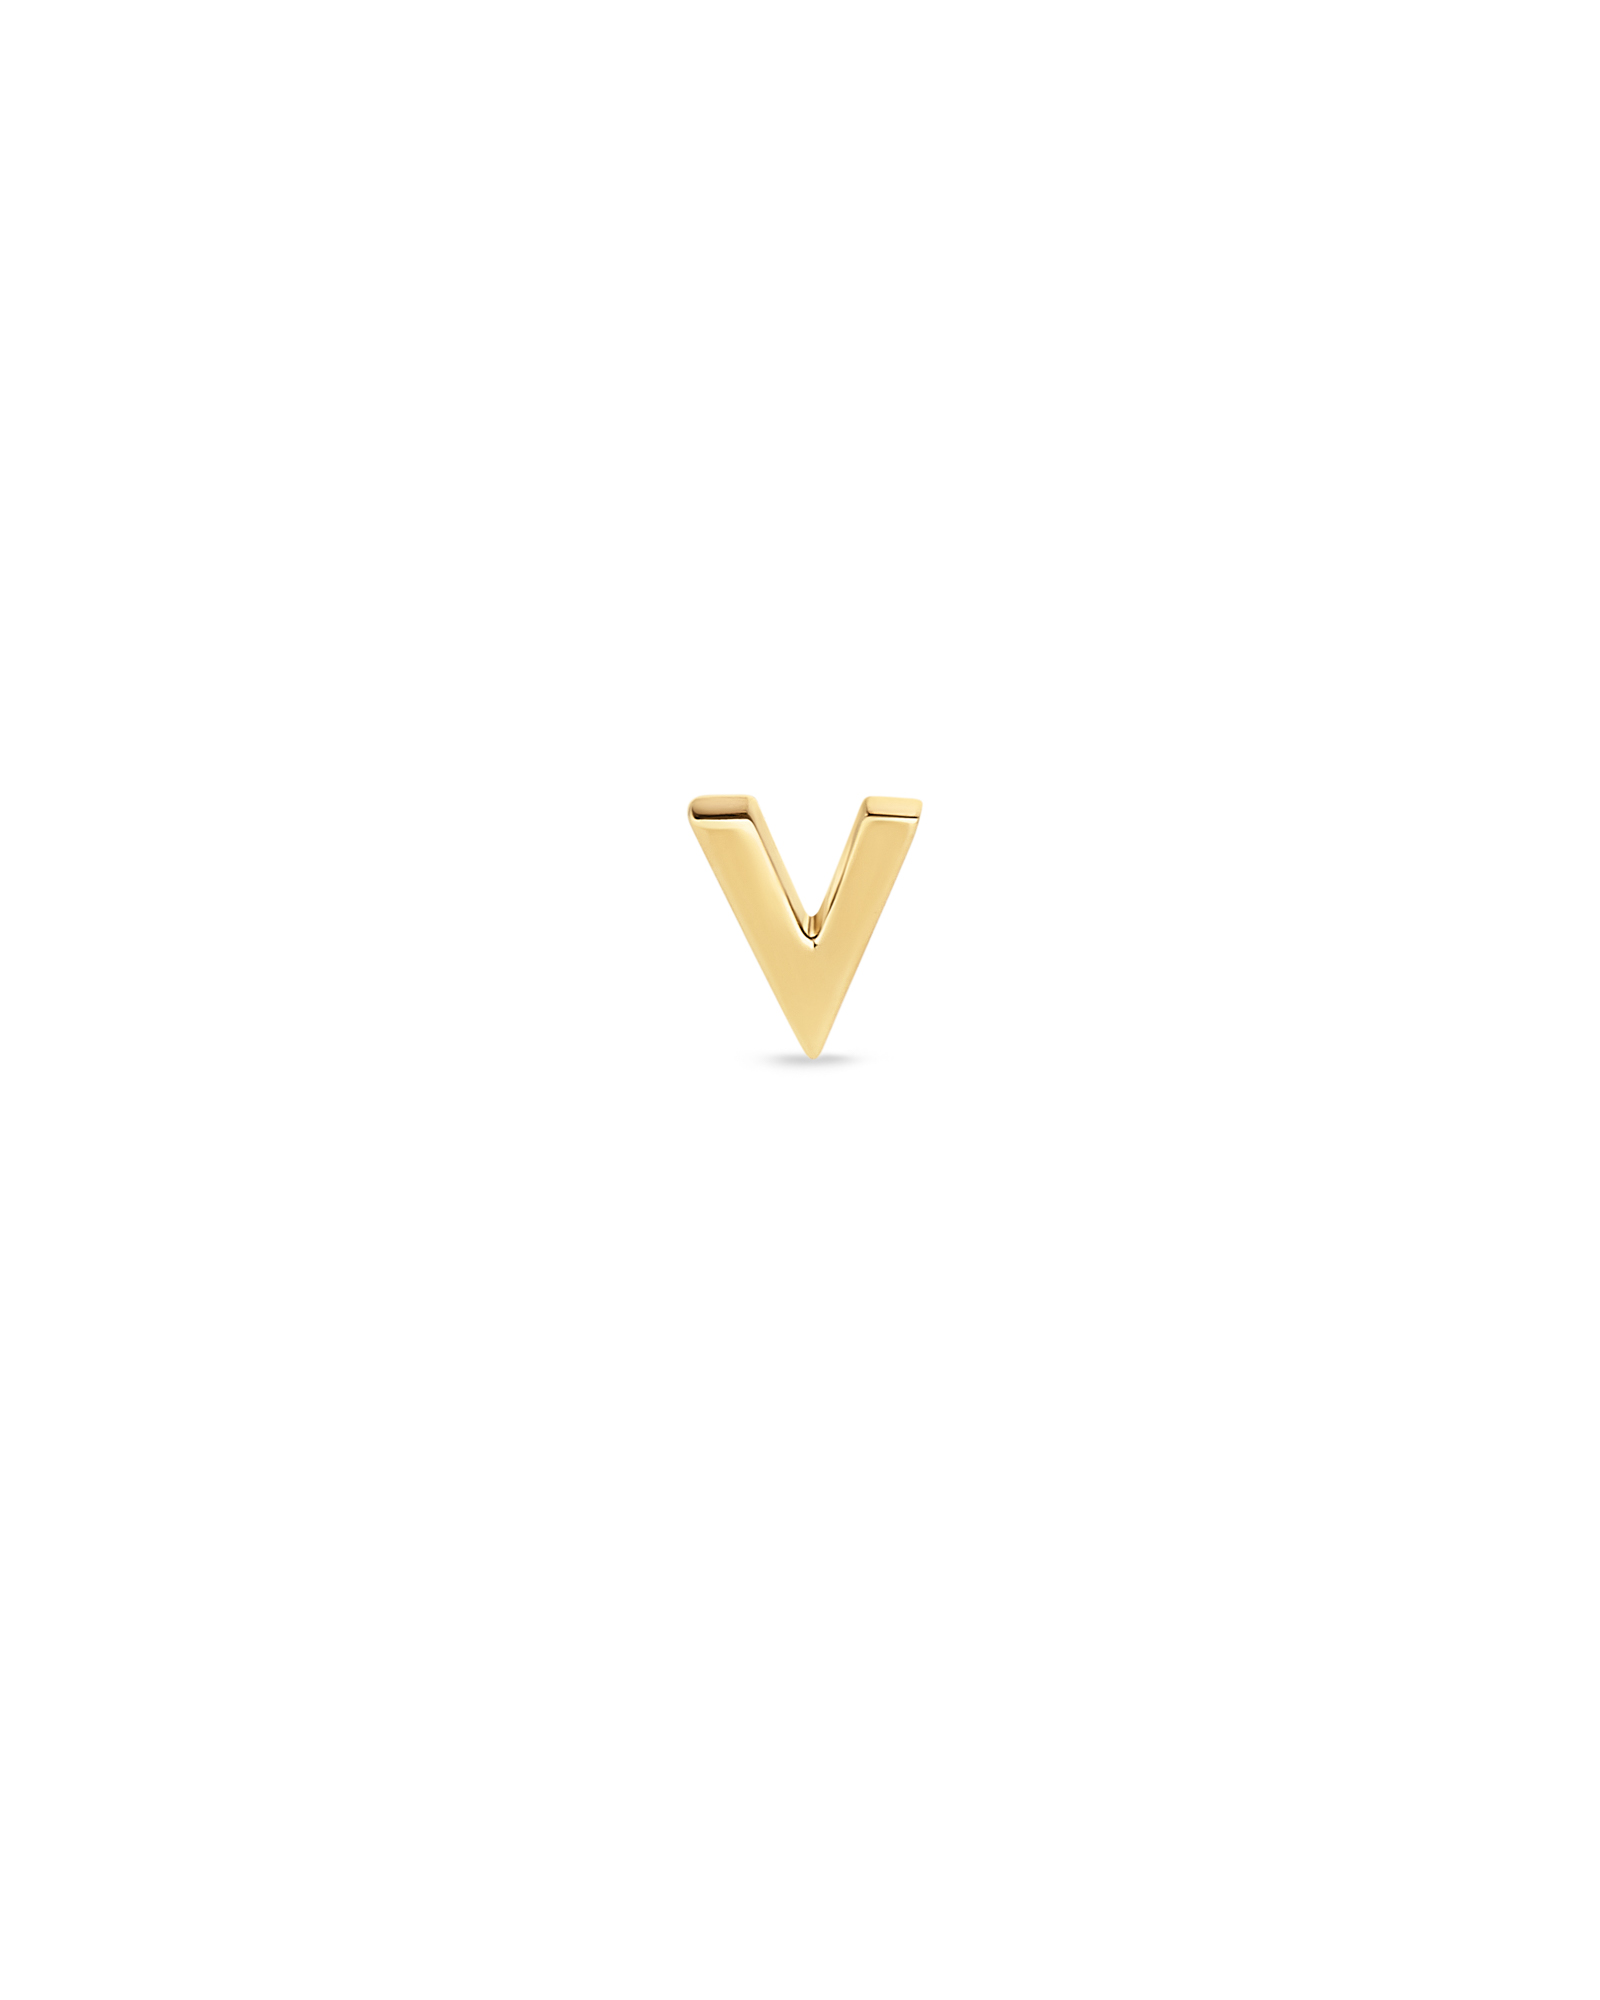 vuitton letter v